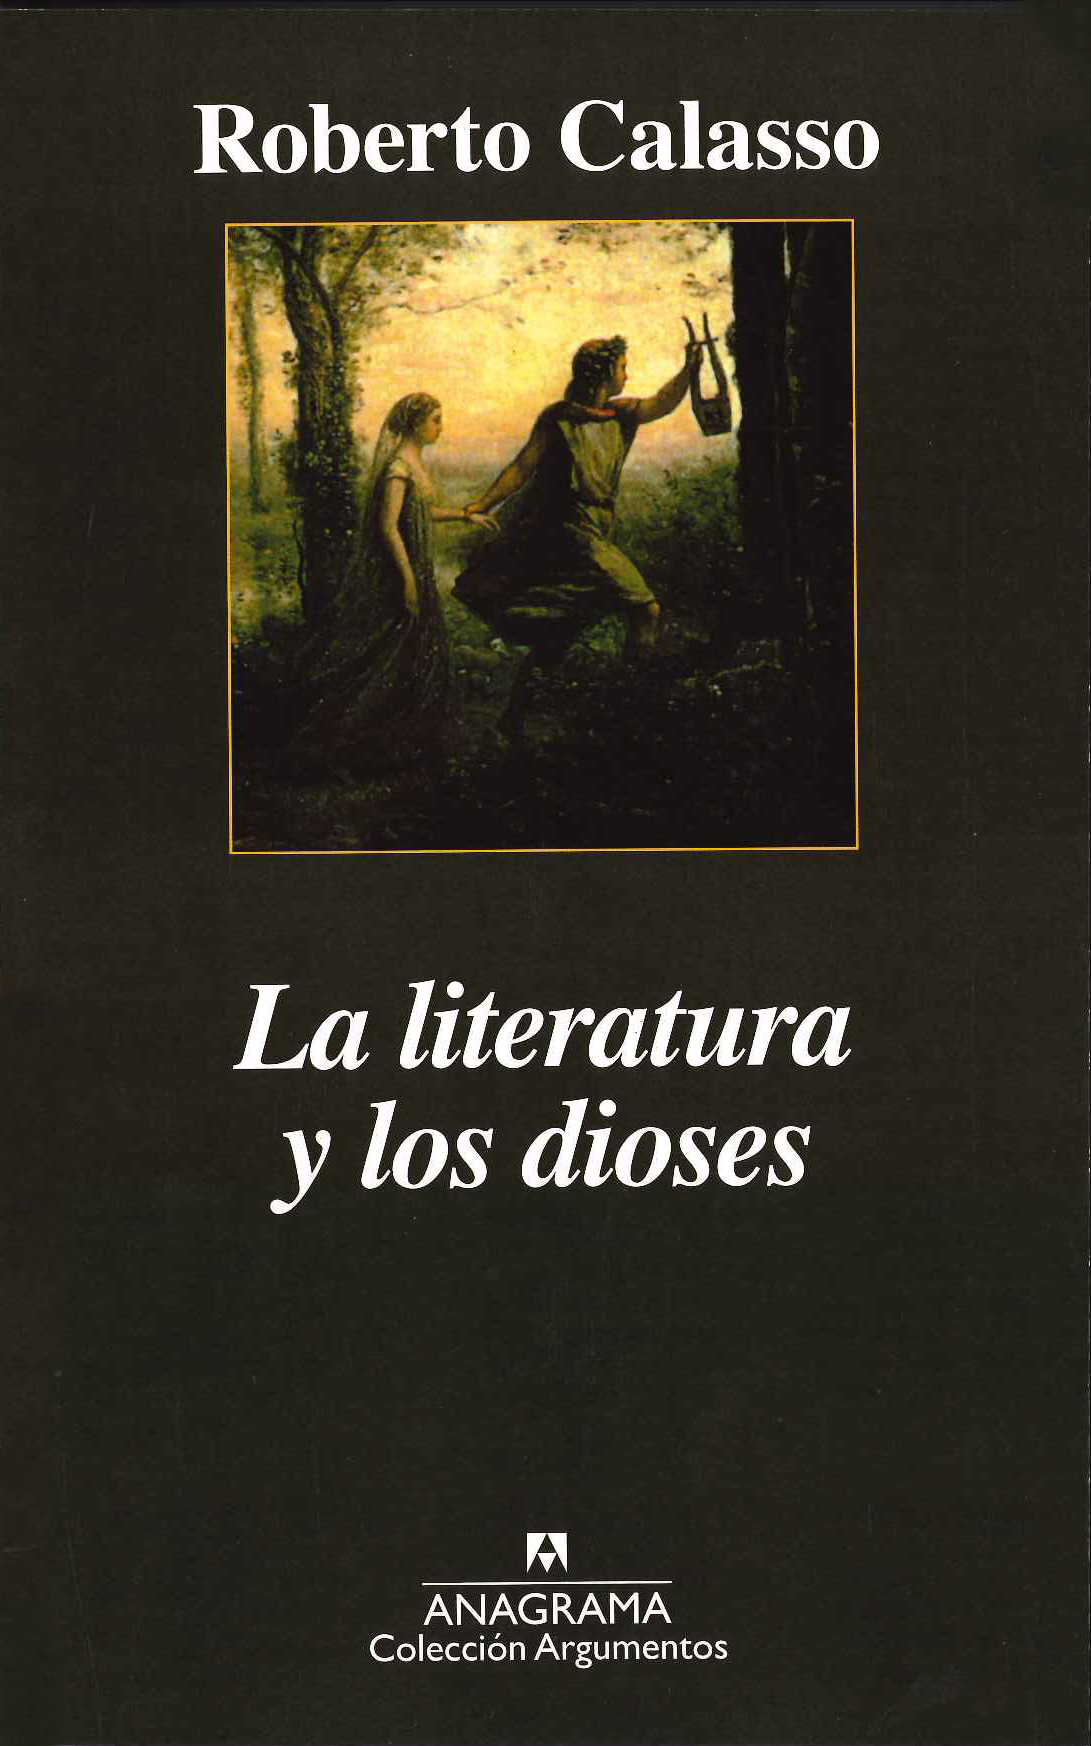 nadie Desagradable regimiento La literatura y los dioses - Calasso, Roberto - 978-84-339-6178-5 -  Editorial Anagrama